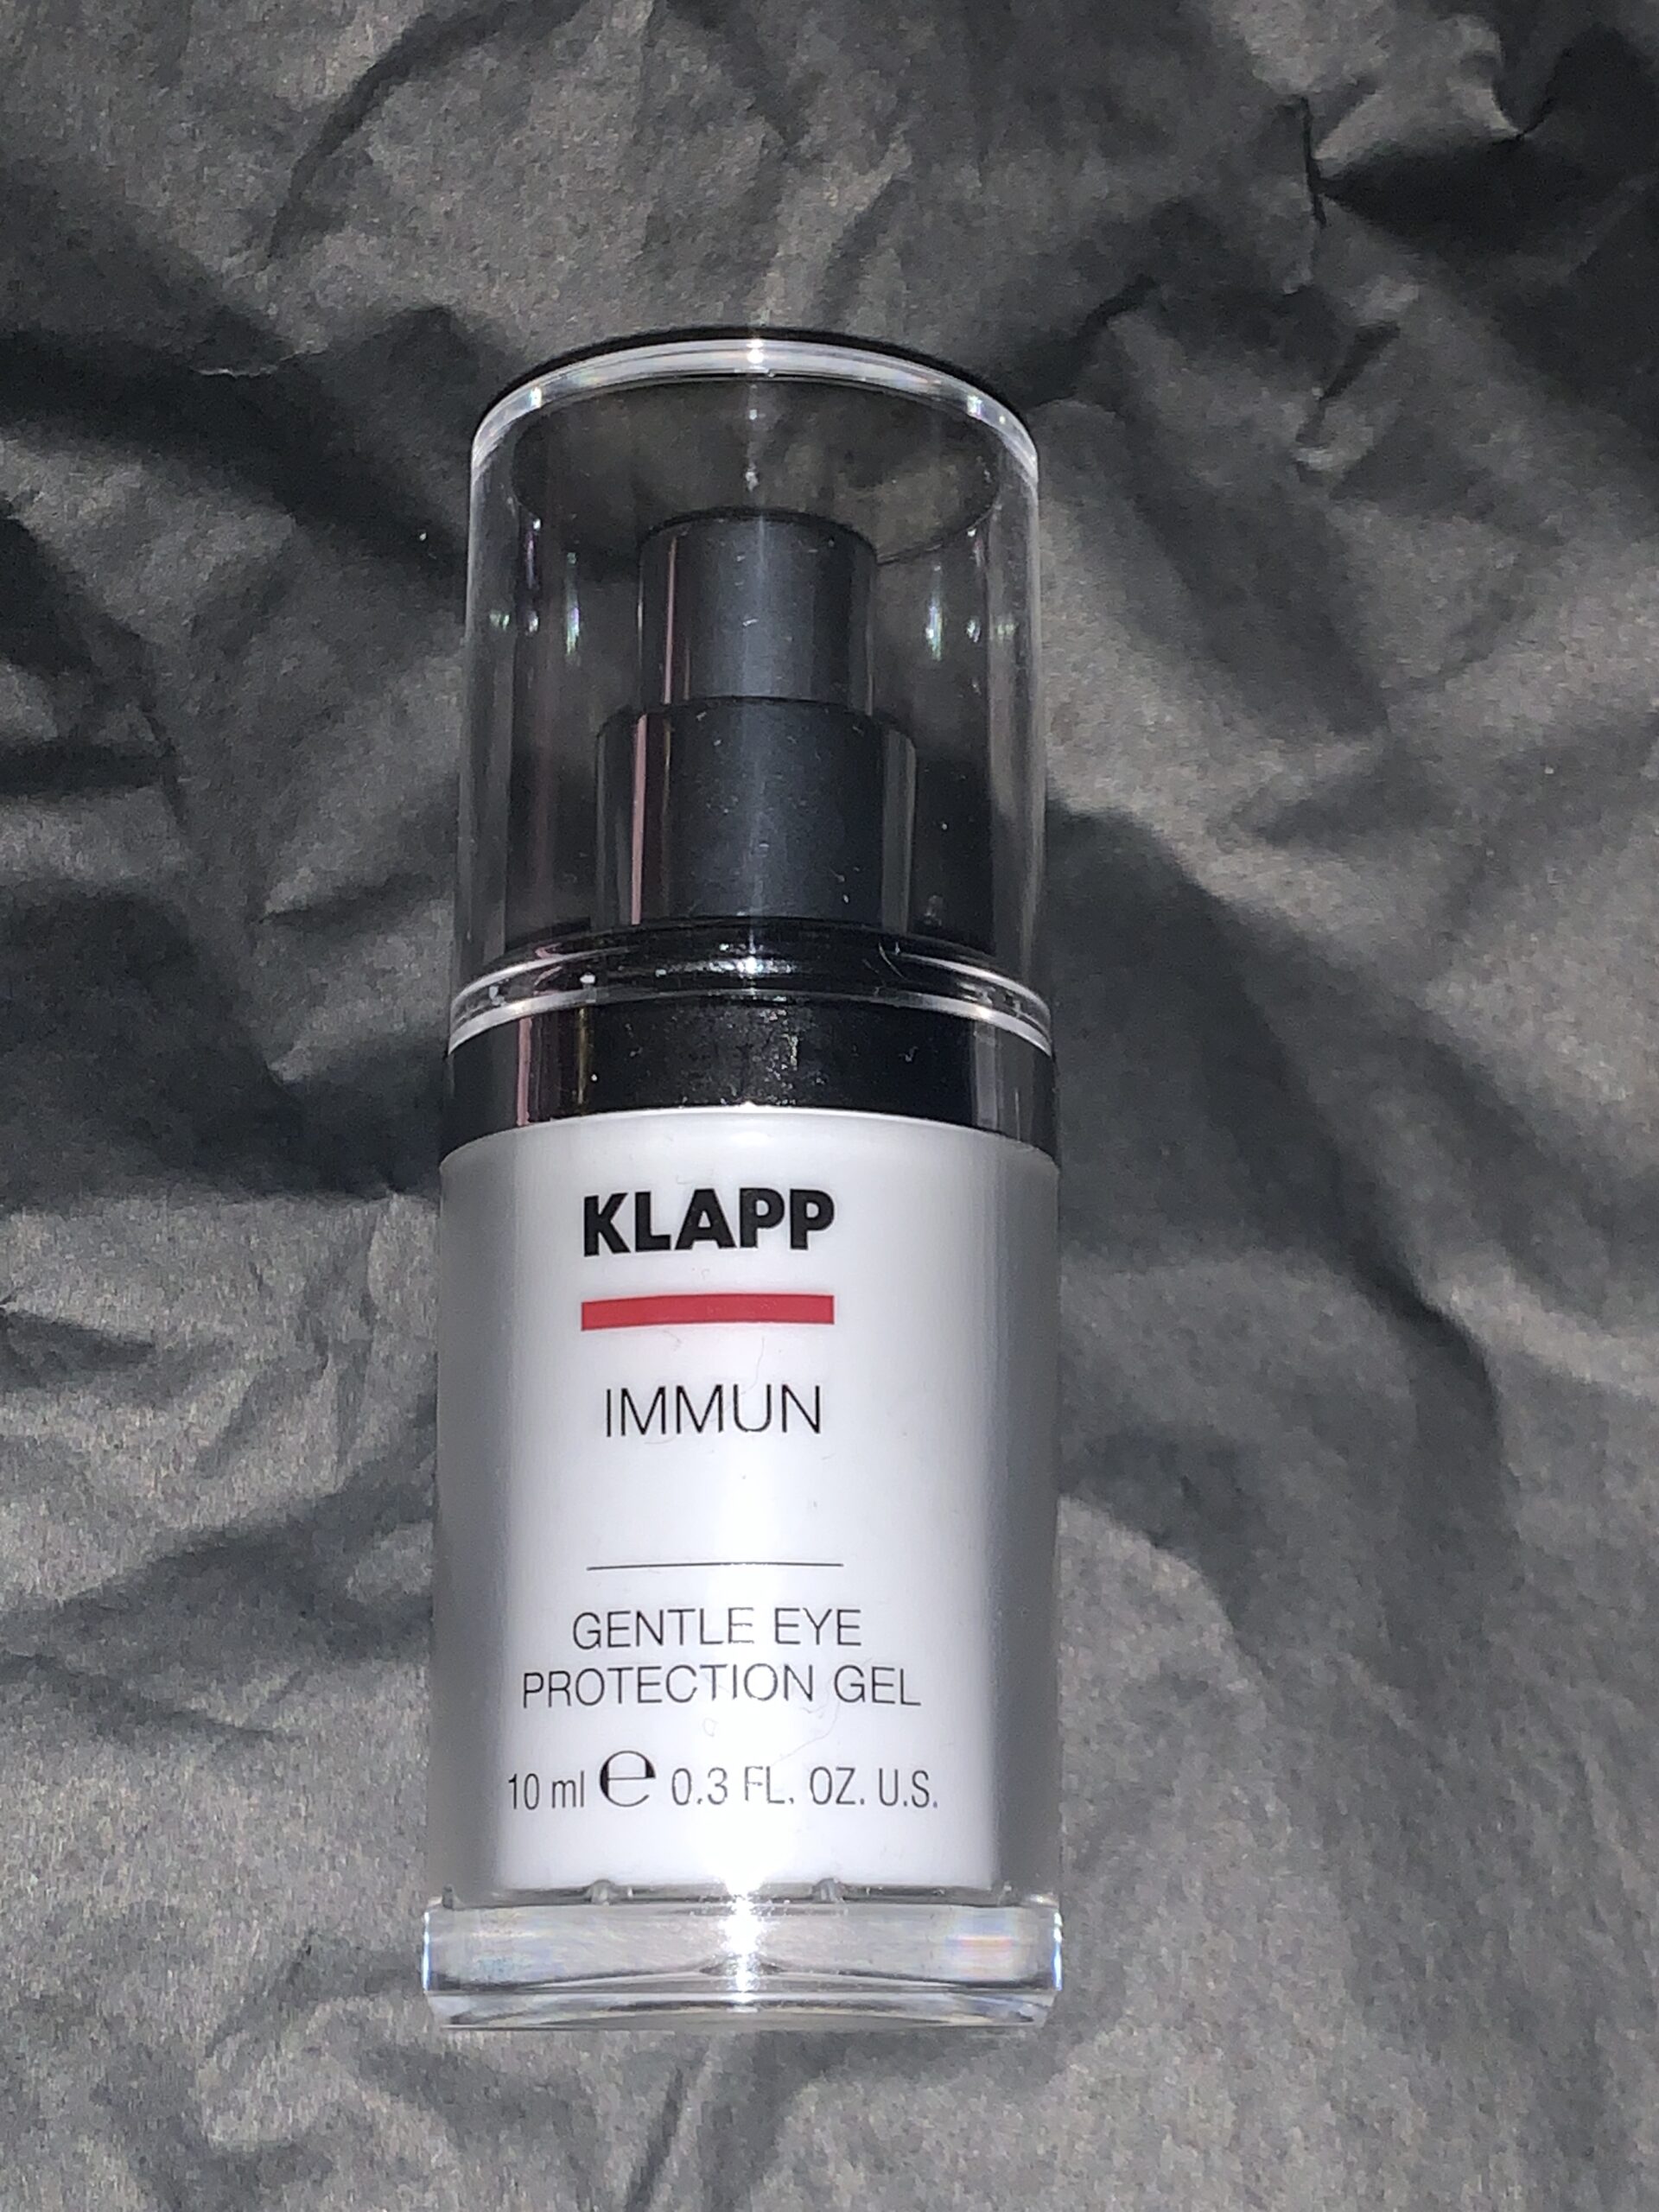 Klapp immun gentle eye protection gel